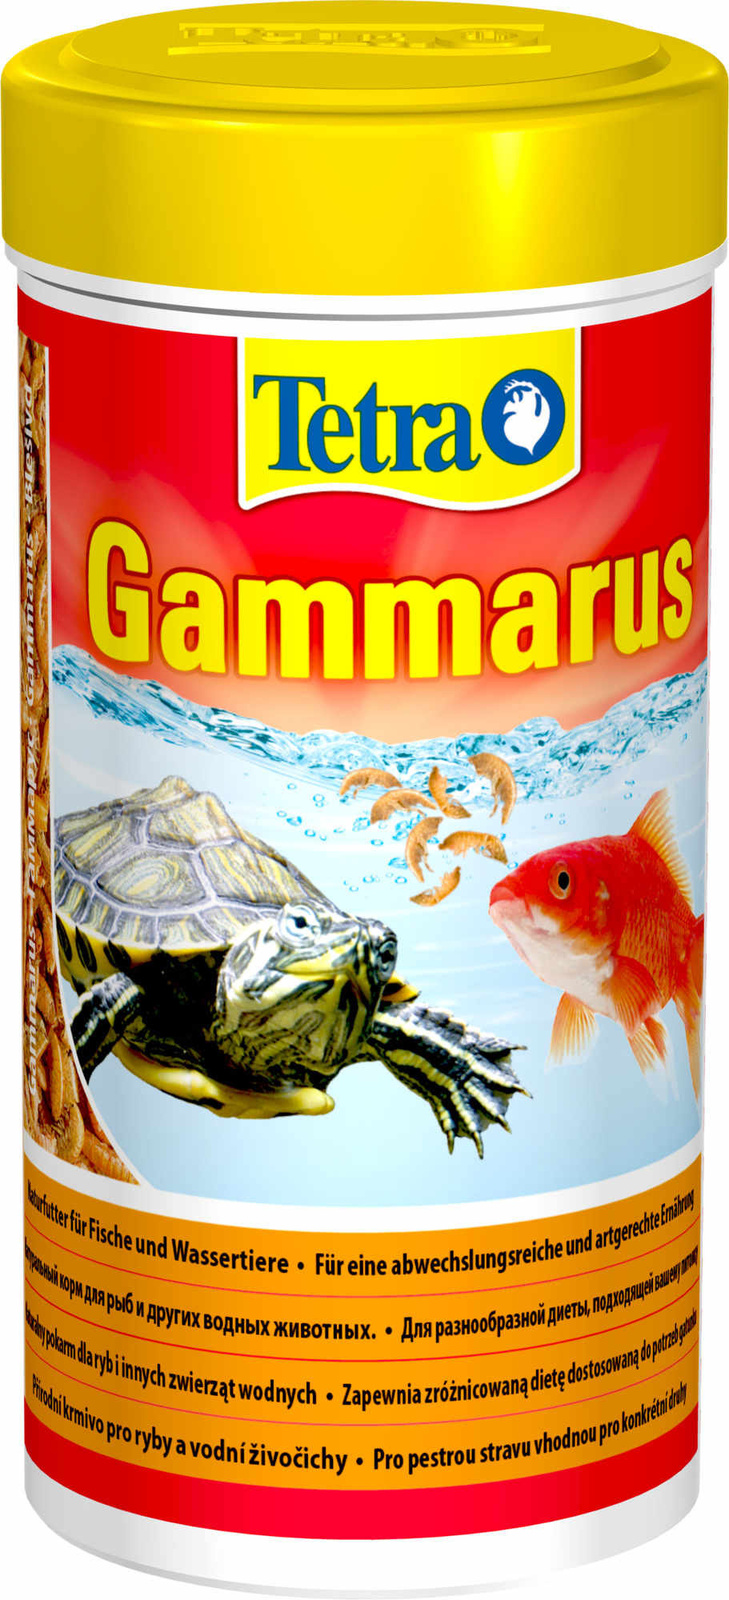 Tetra (корма) Tetra (корма) корм для водных черепах, гаммарус (10 г) tetra корма tetra корма корм для водных черепах гаммарус 10 г